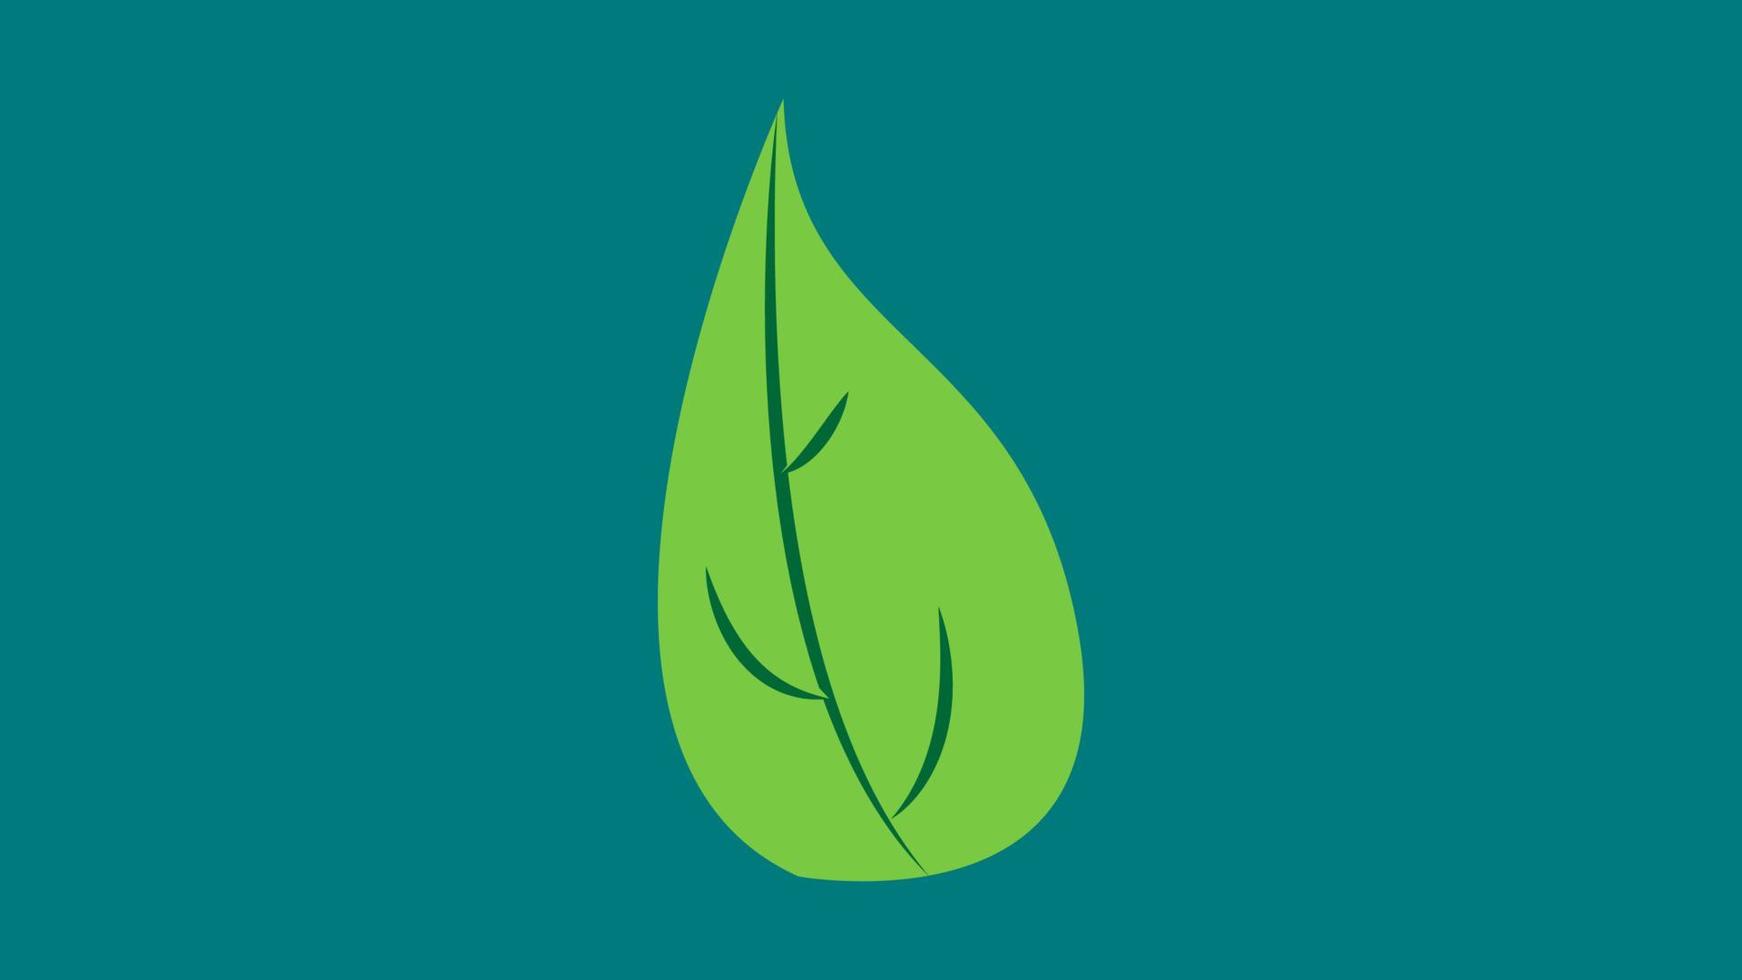 basilika blad av grön Färg på en grön bakgrund, vektor illustration. basilika till Lägg till till mat, pizza, olika maträtter. naturlig organisk krydda, svart och vit illustration